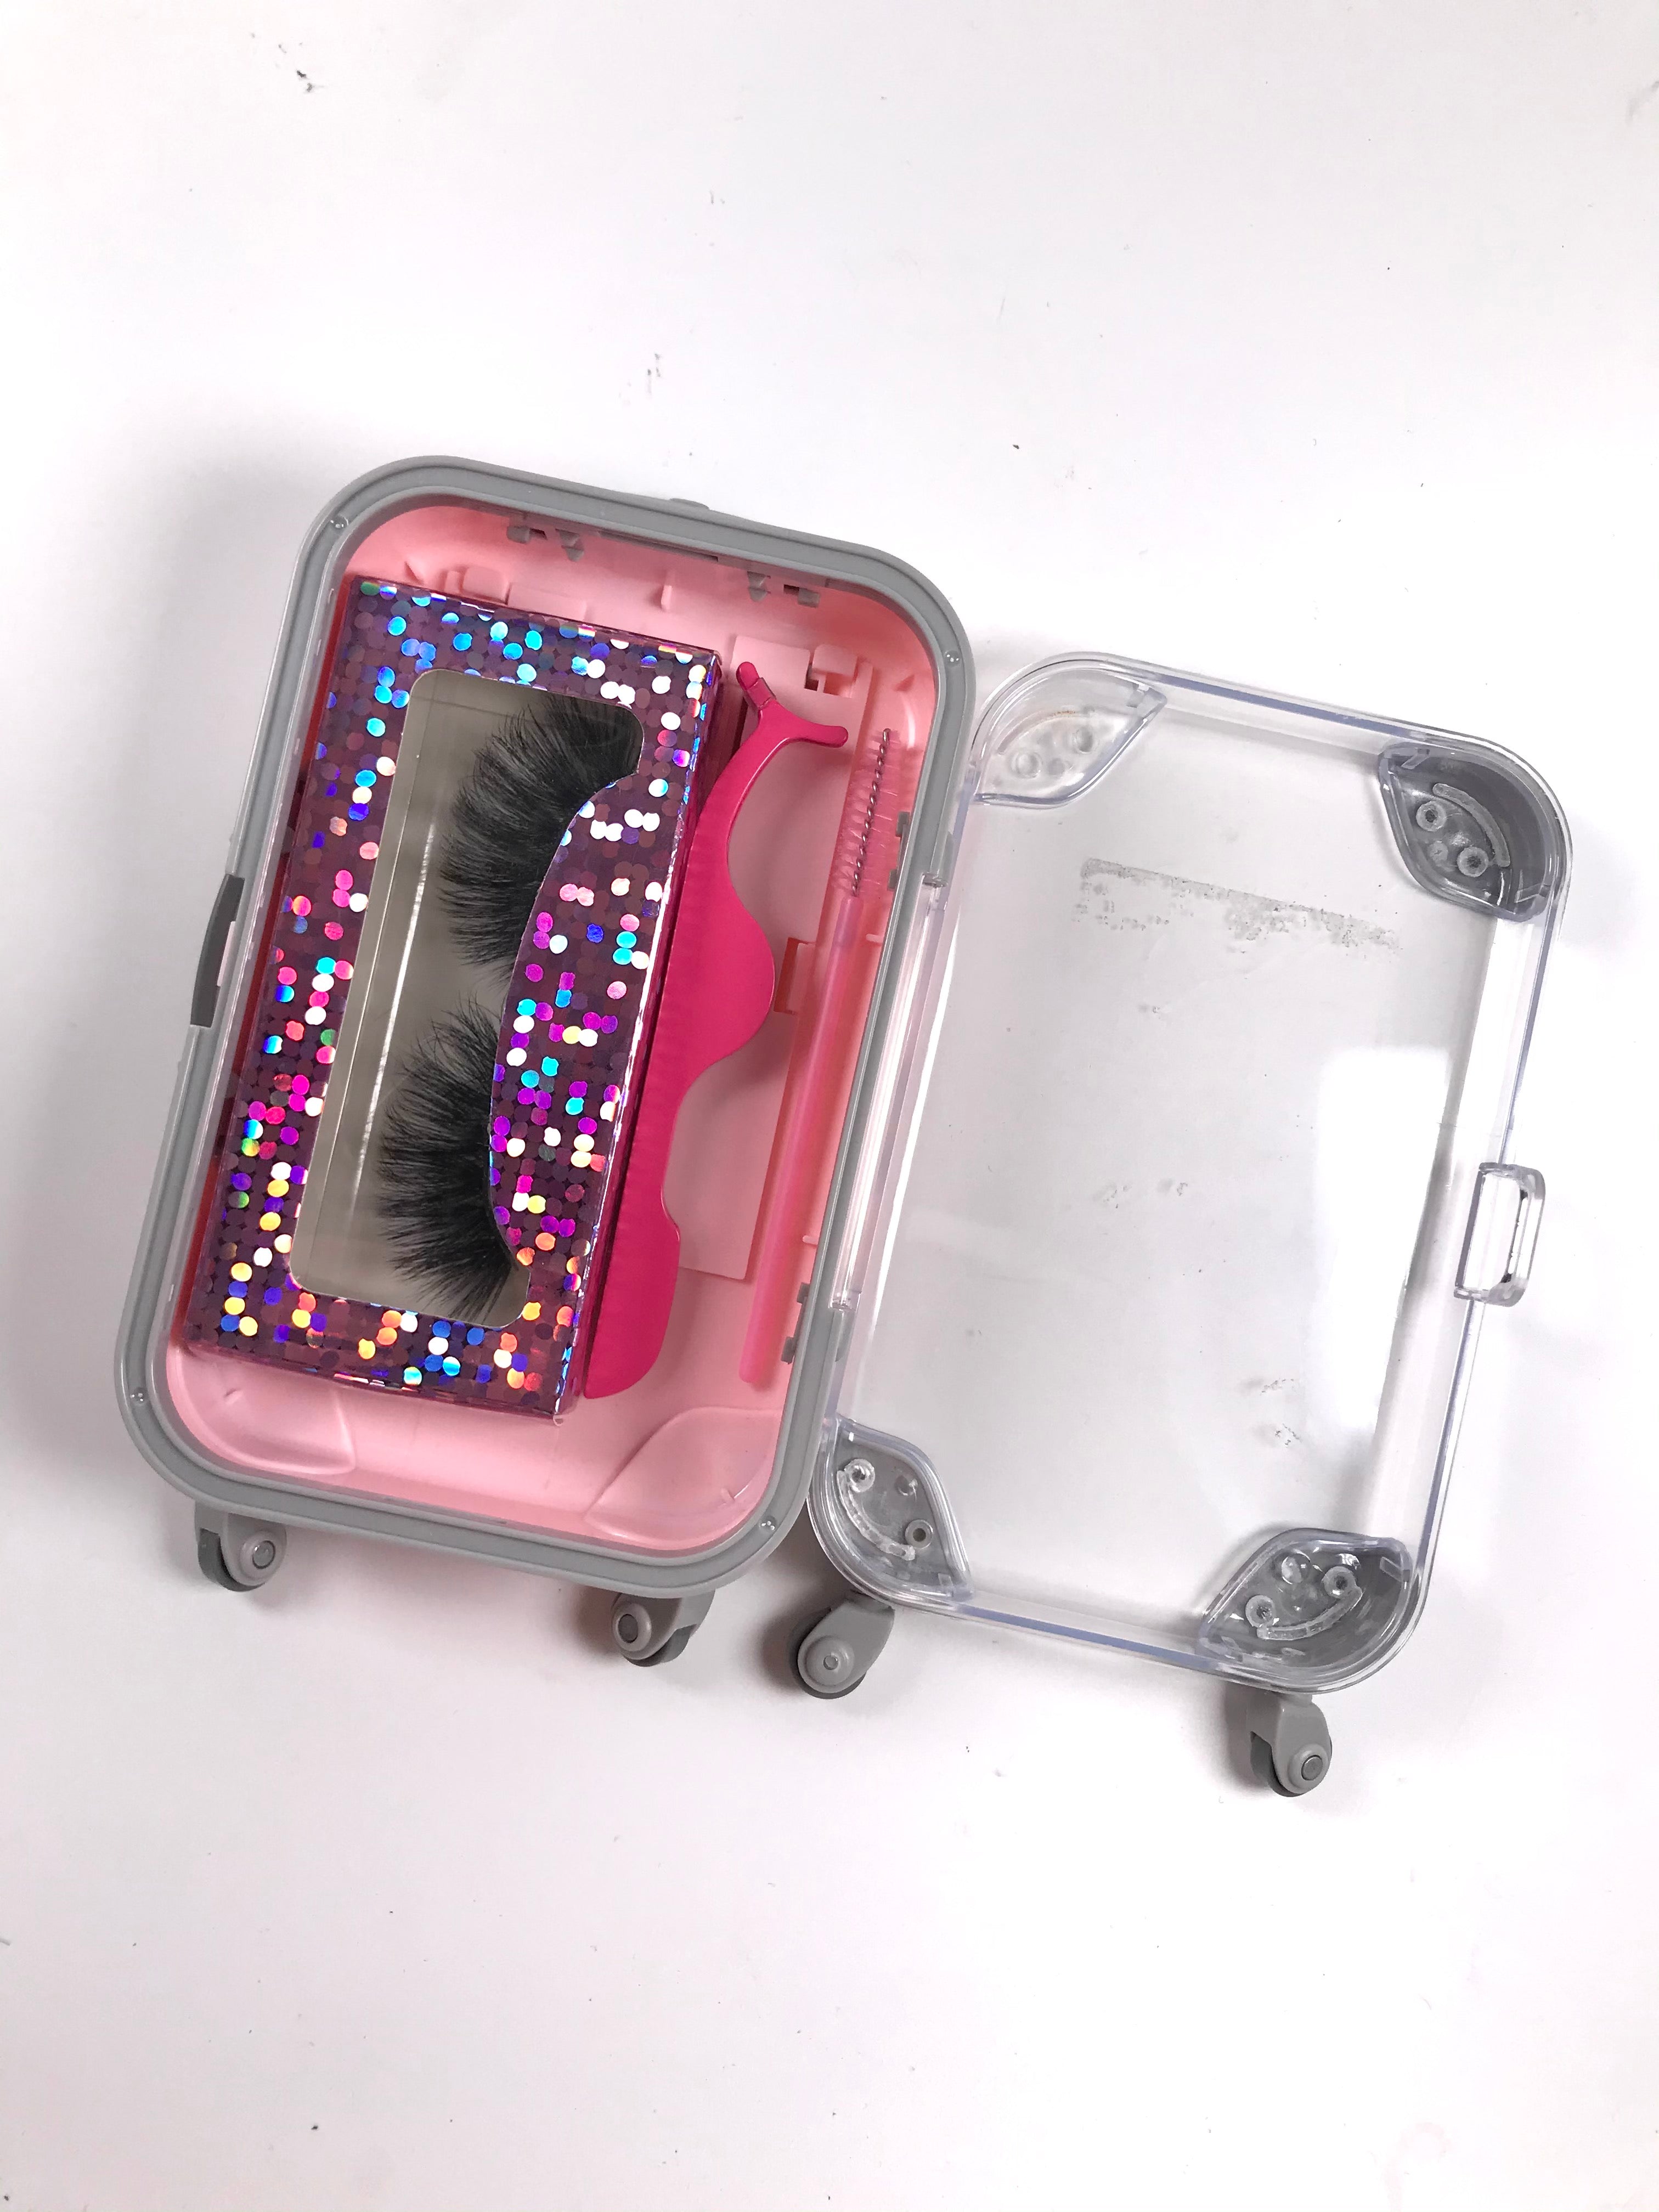 Suitcase eyelash box set